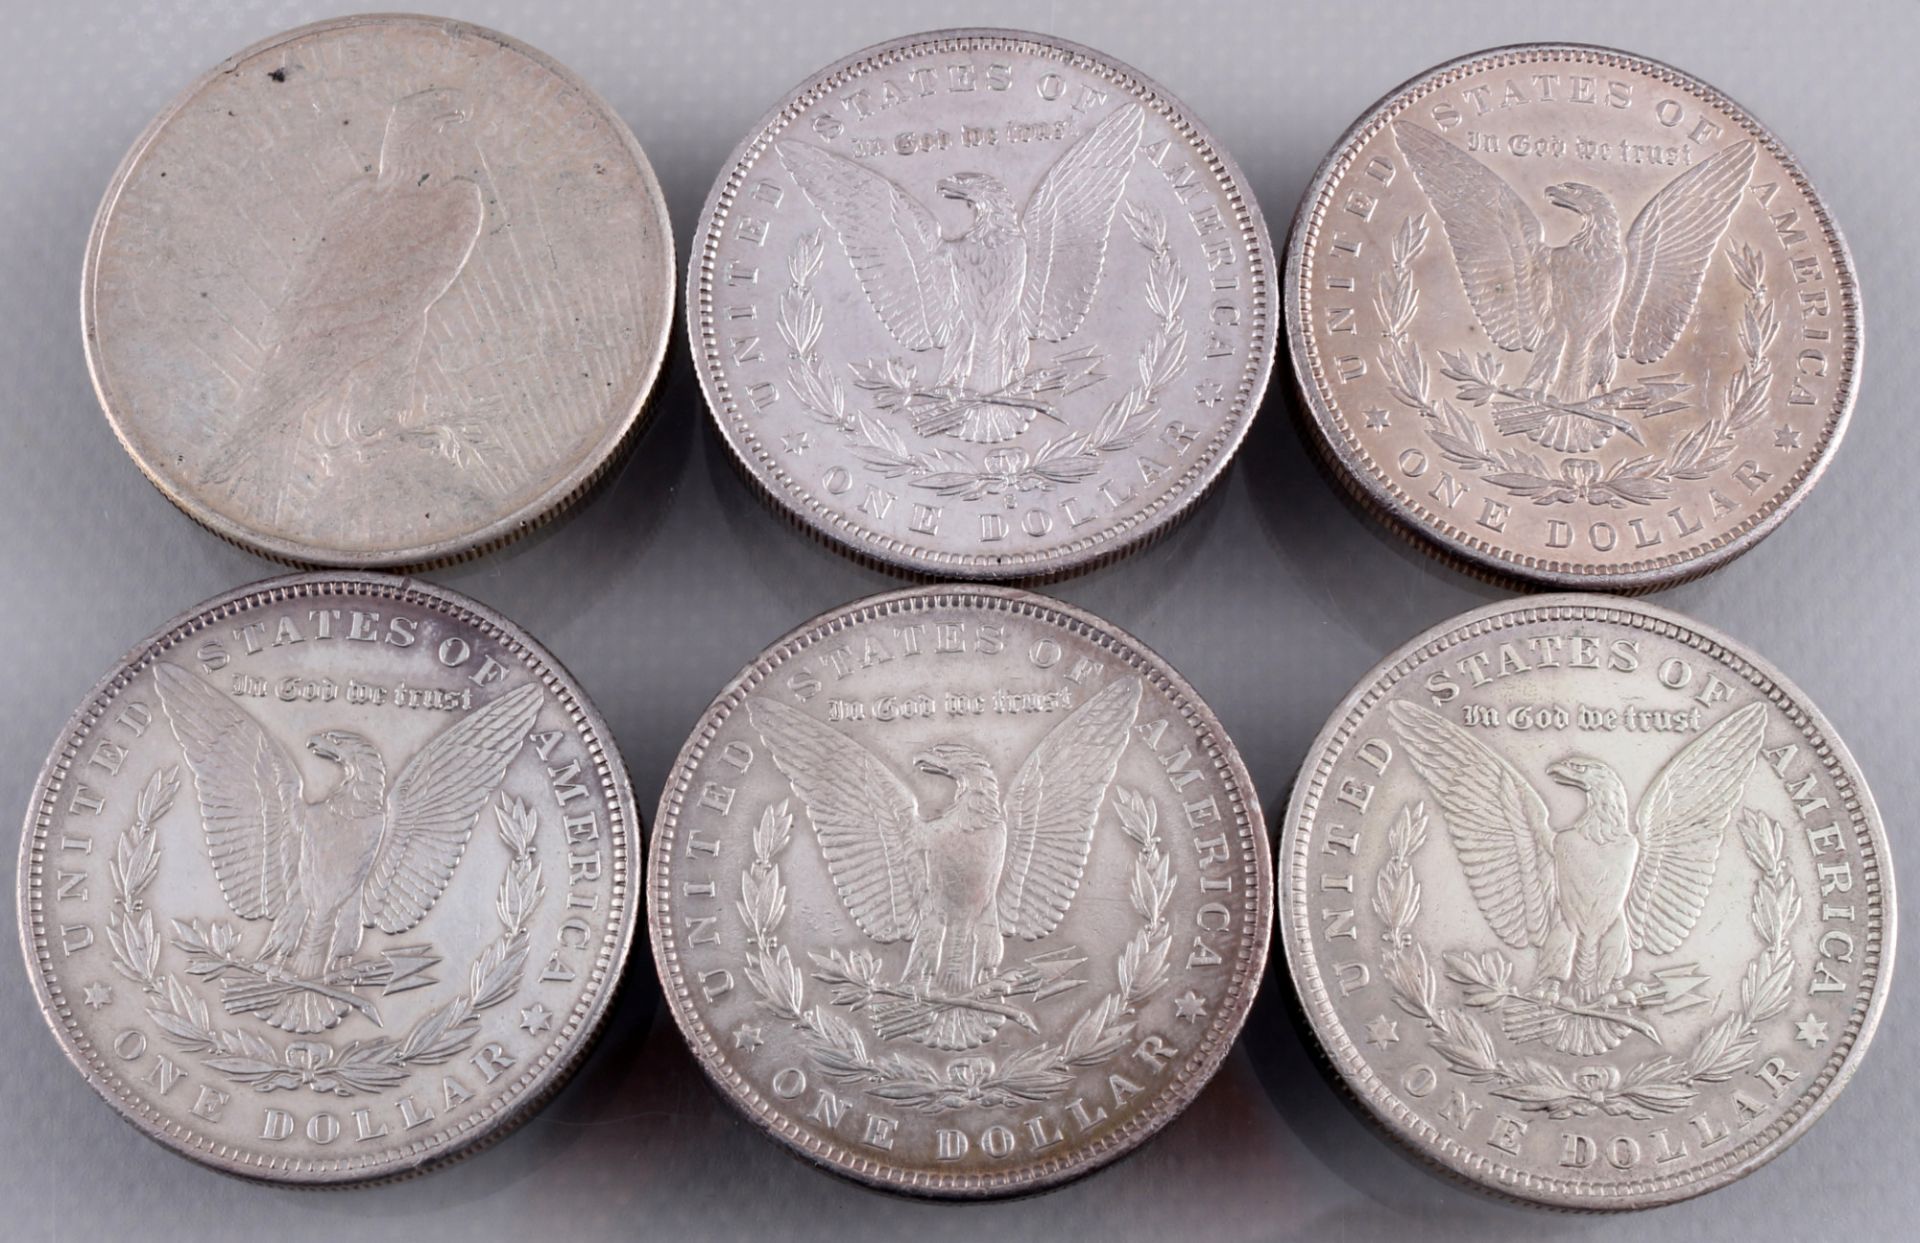 6 silver coins - Morgan Dollar 1882 - 1922, Silbermünzen - Morgan Dollar 1882 - 1922, - Image 5 of 5